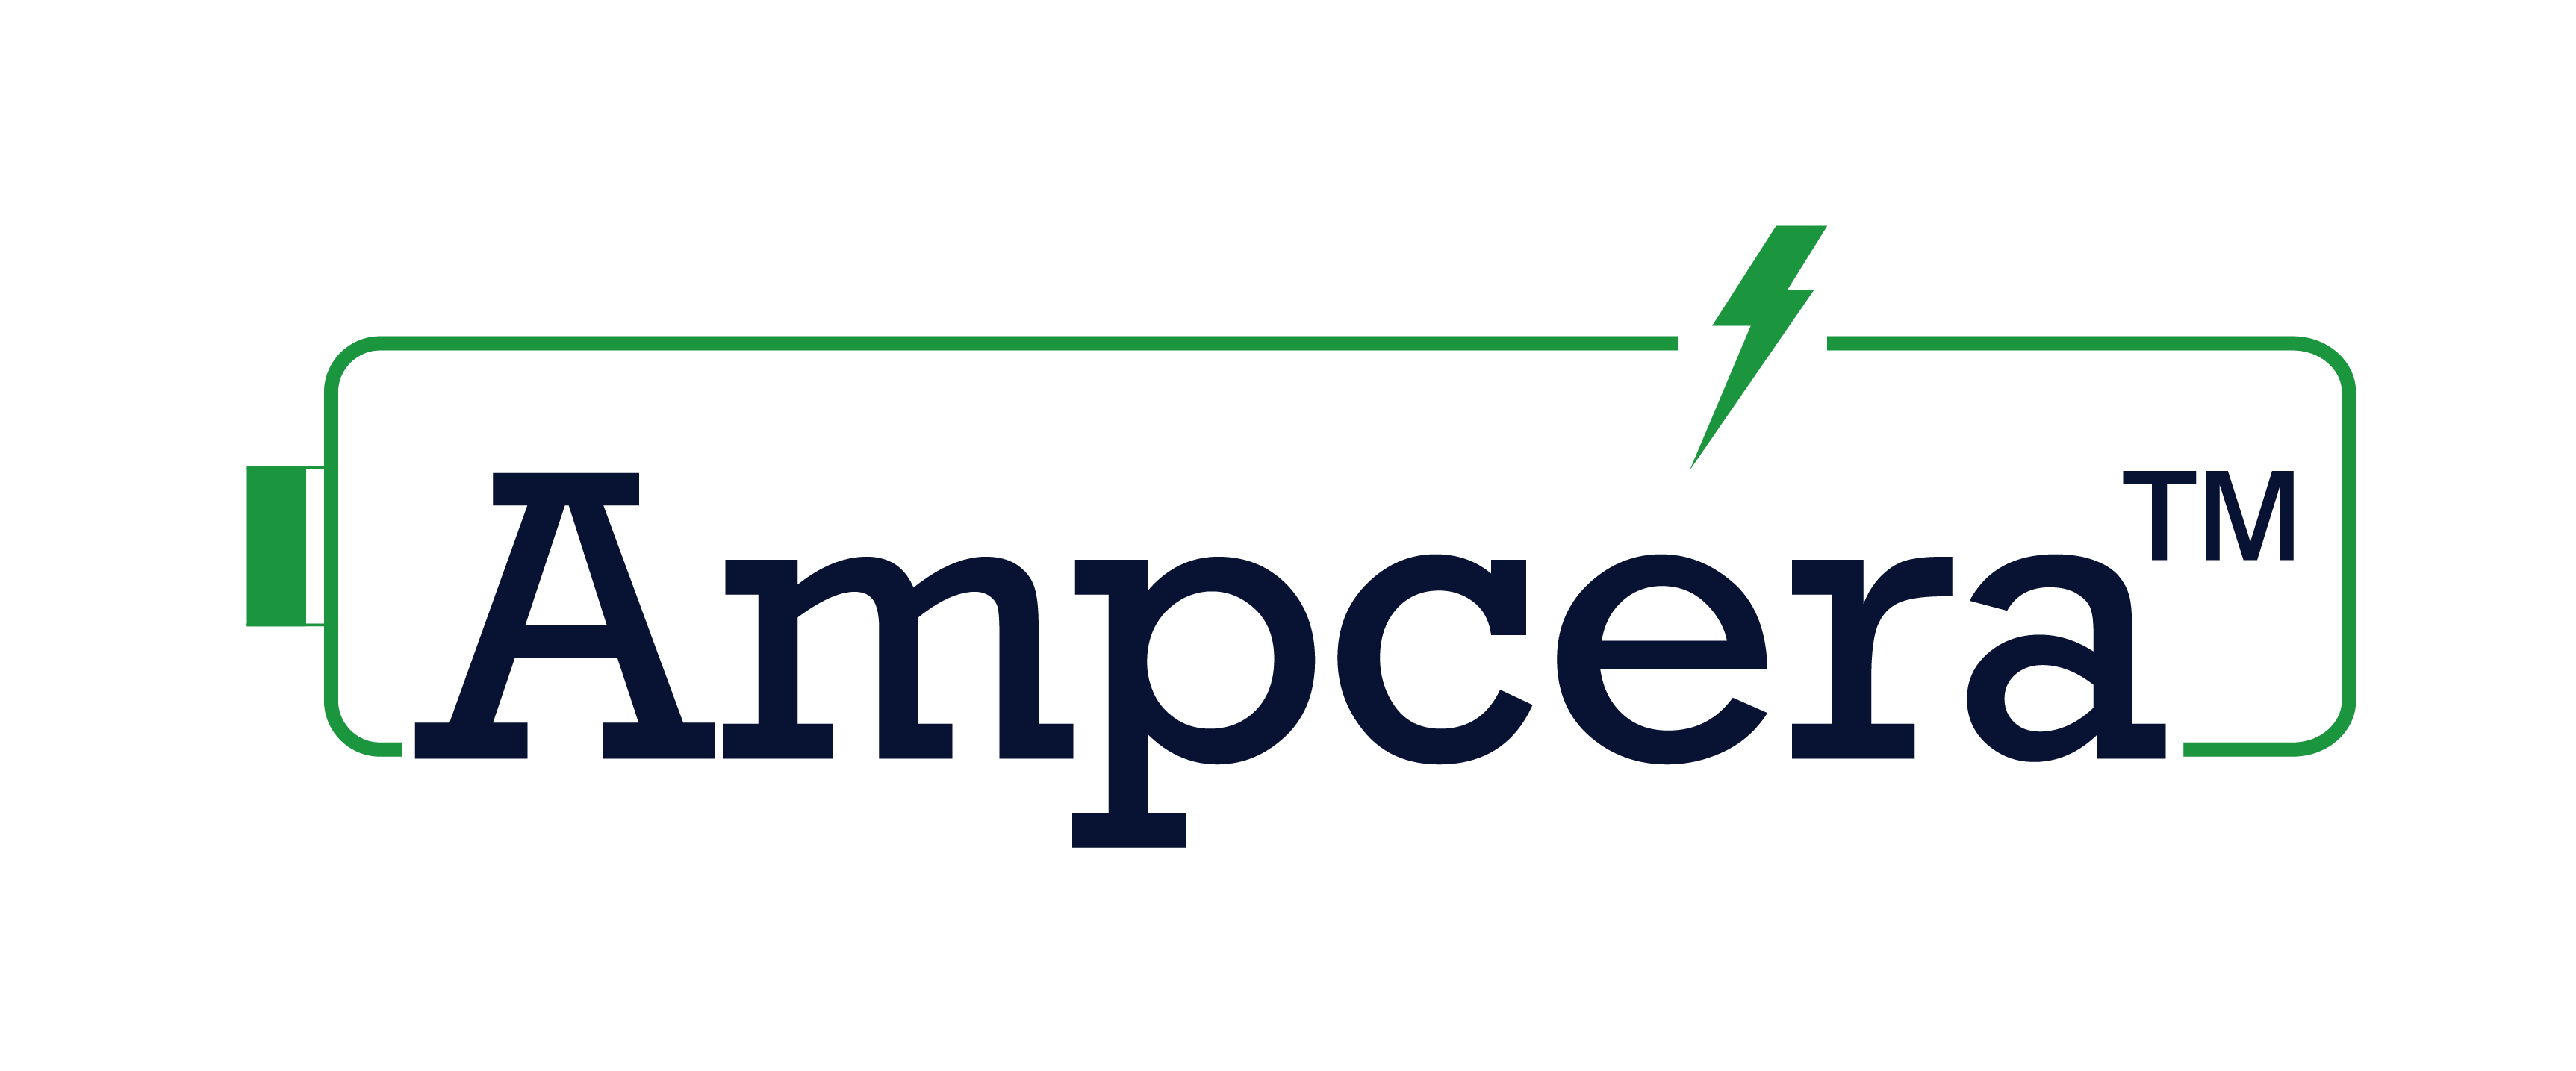 Ampcera logo